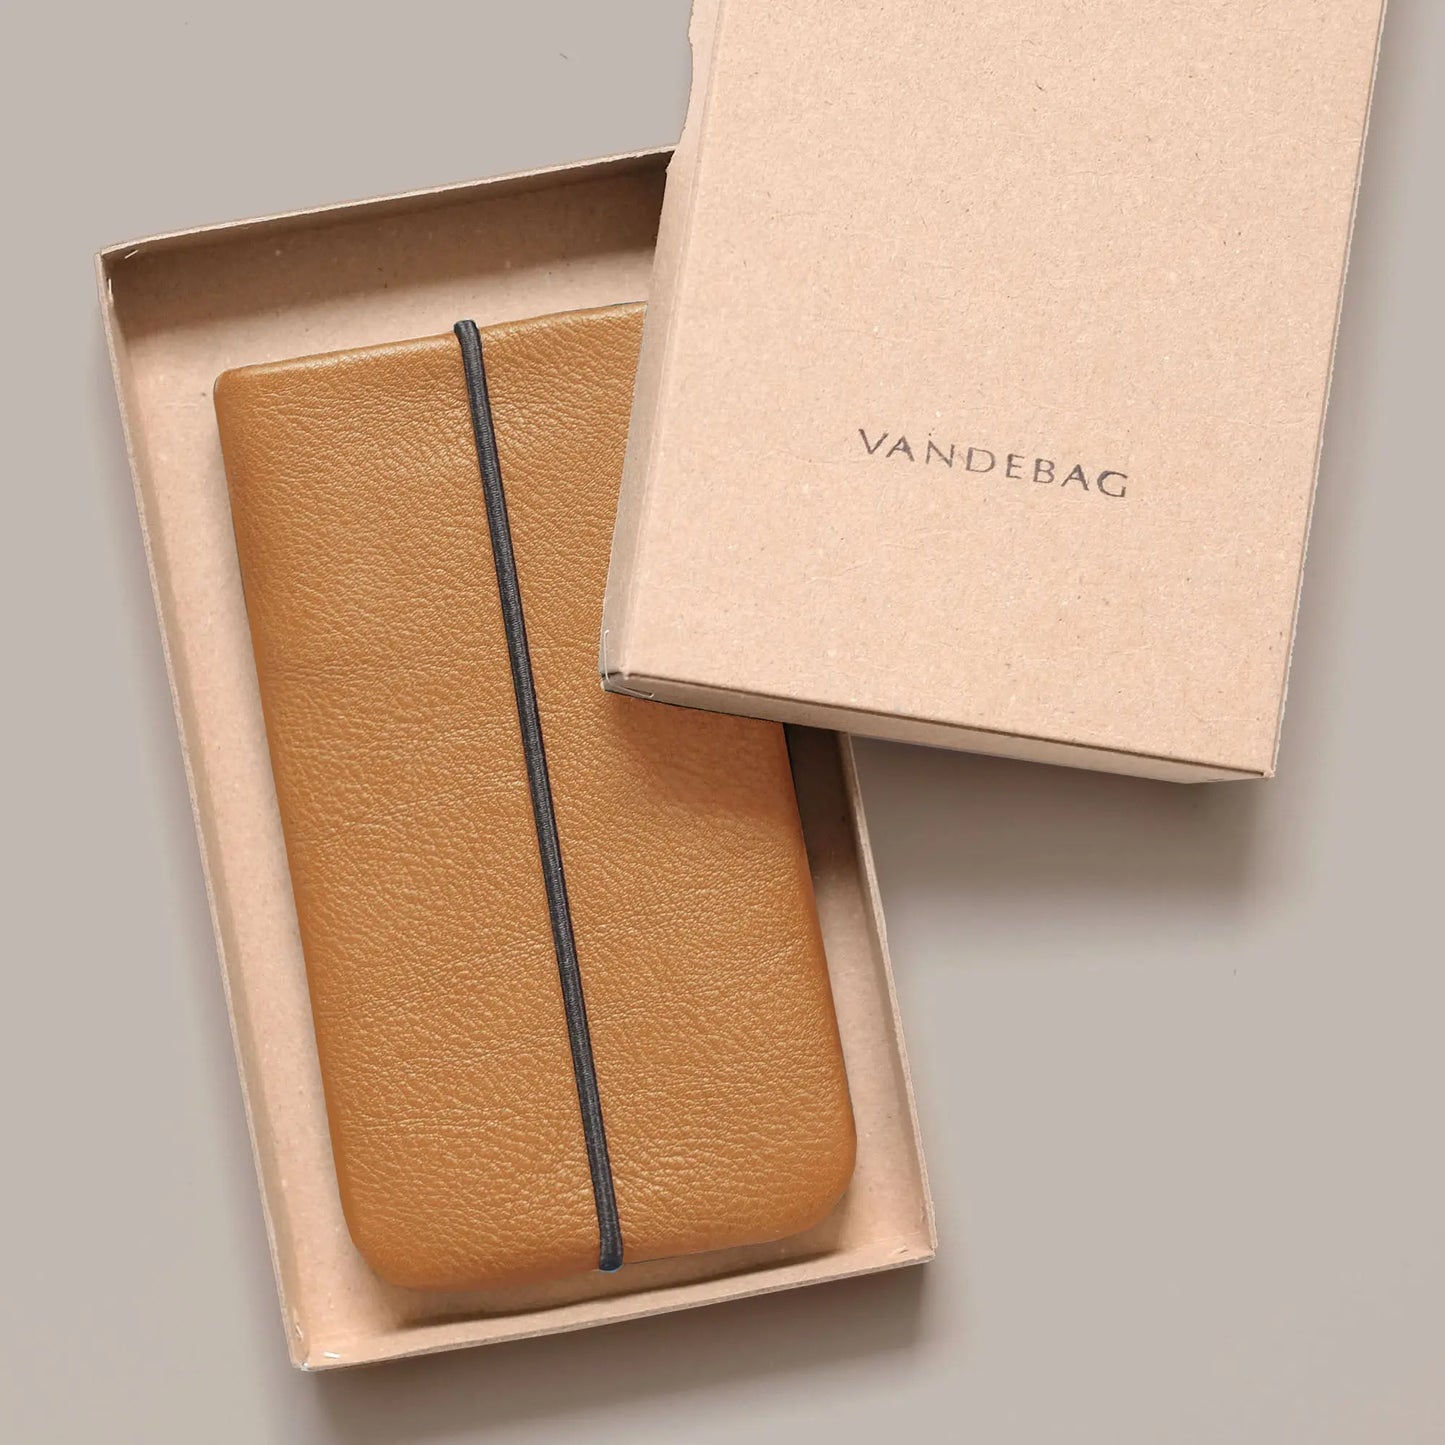 Handyhülle aus Rindsleder in hellbraun liegt in Geschenkbox mit Aufschrift Vandebag